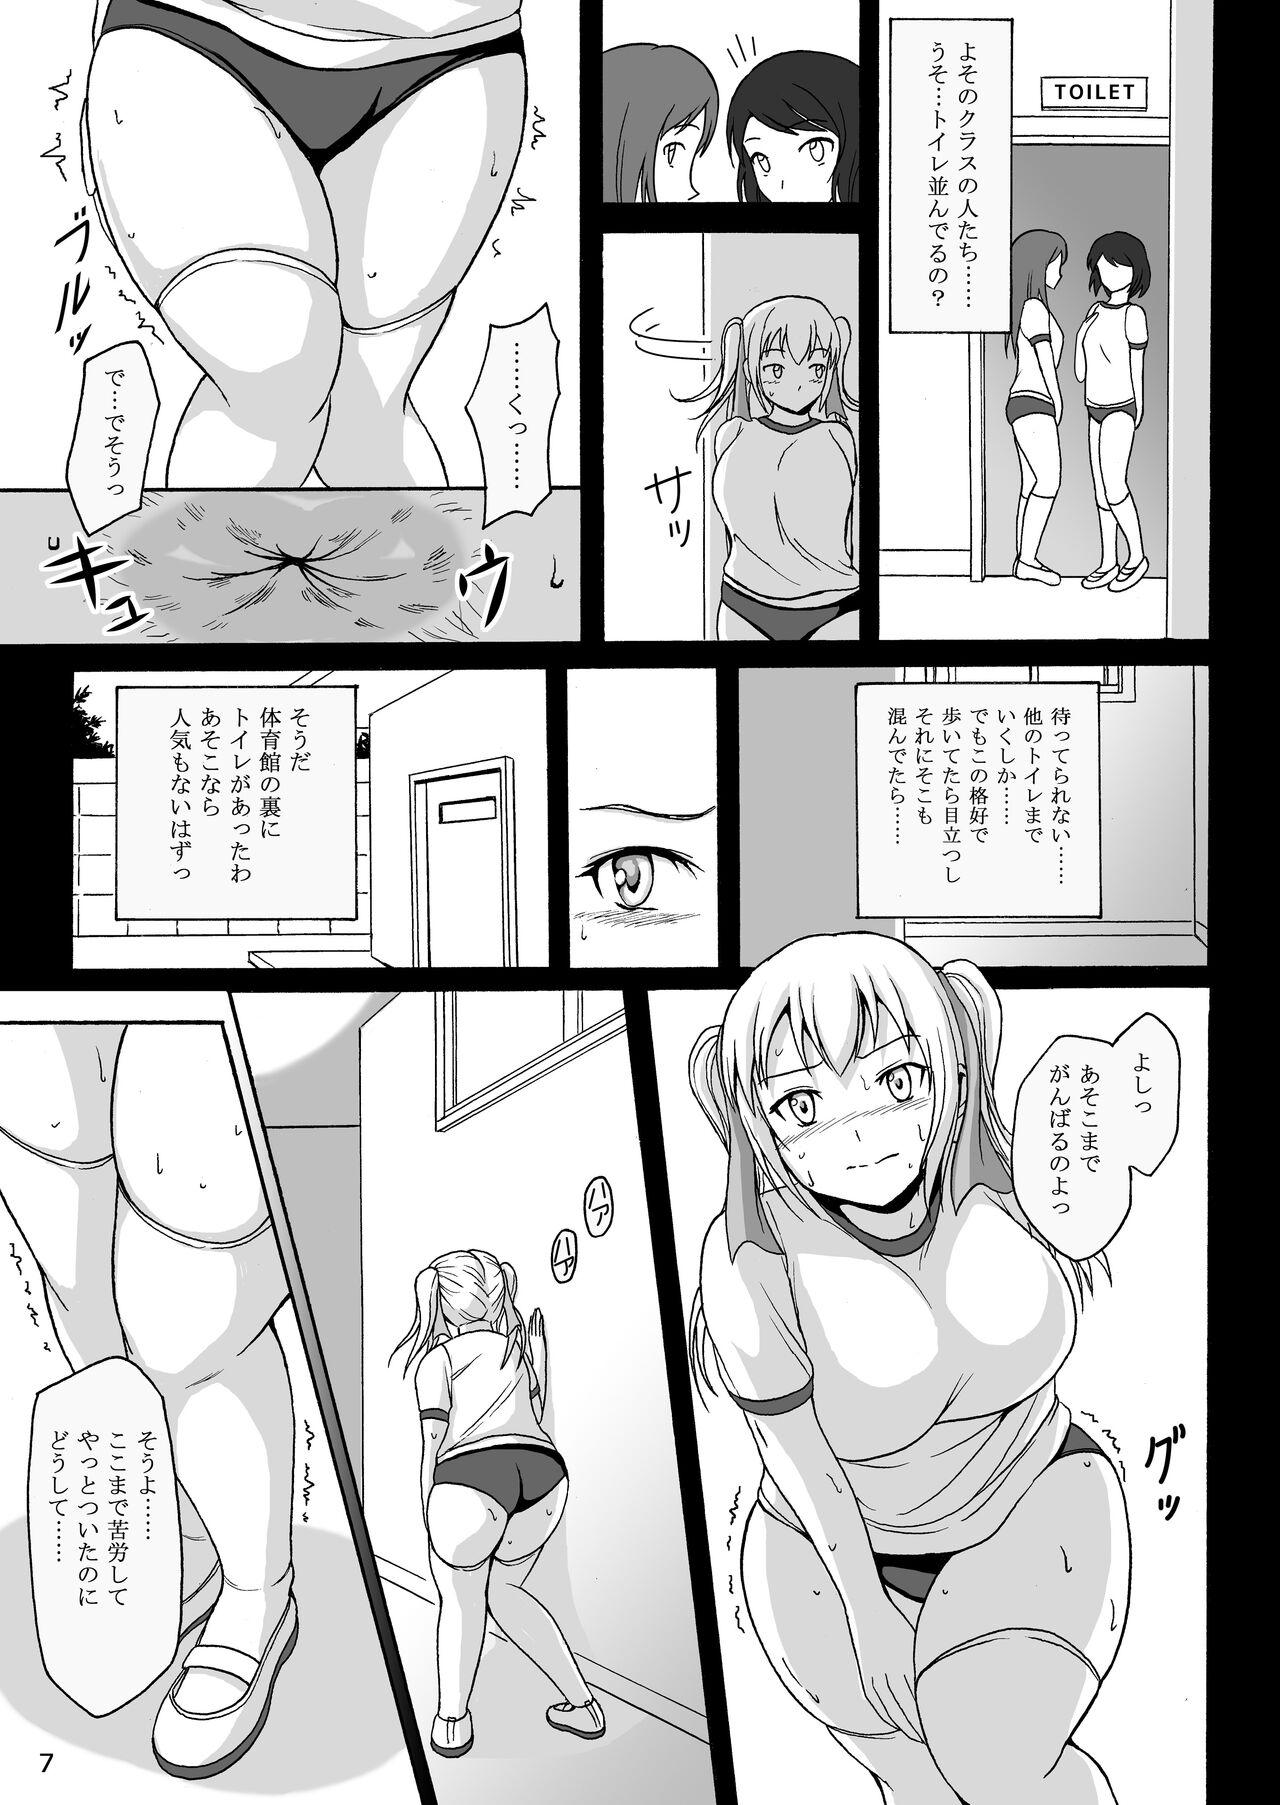 Orgame Haisetsu Shoujo 7 Hinako no Shippai Guyonshemale - Page 6